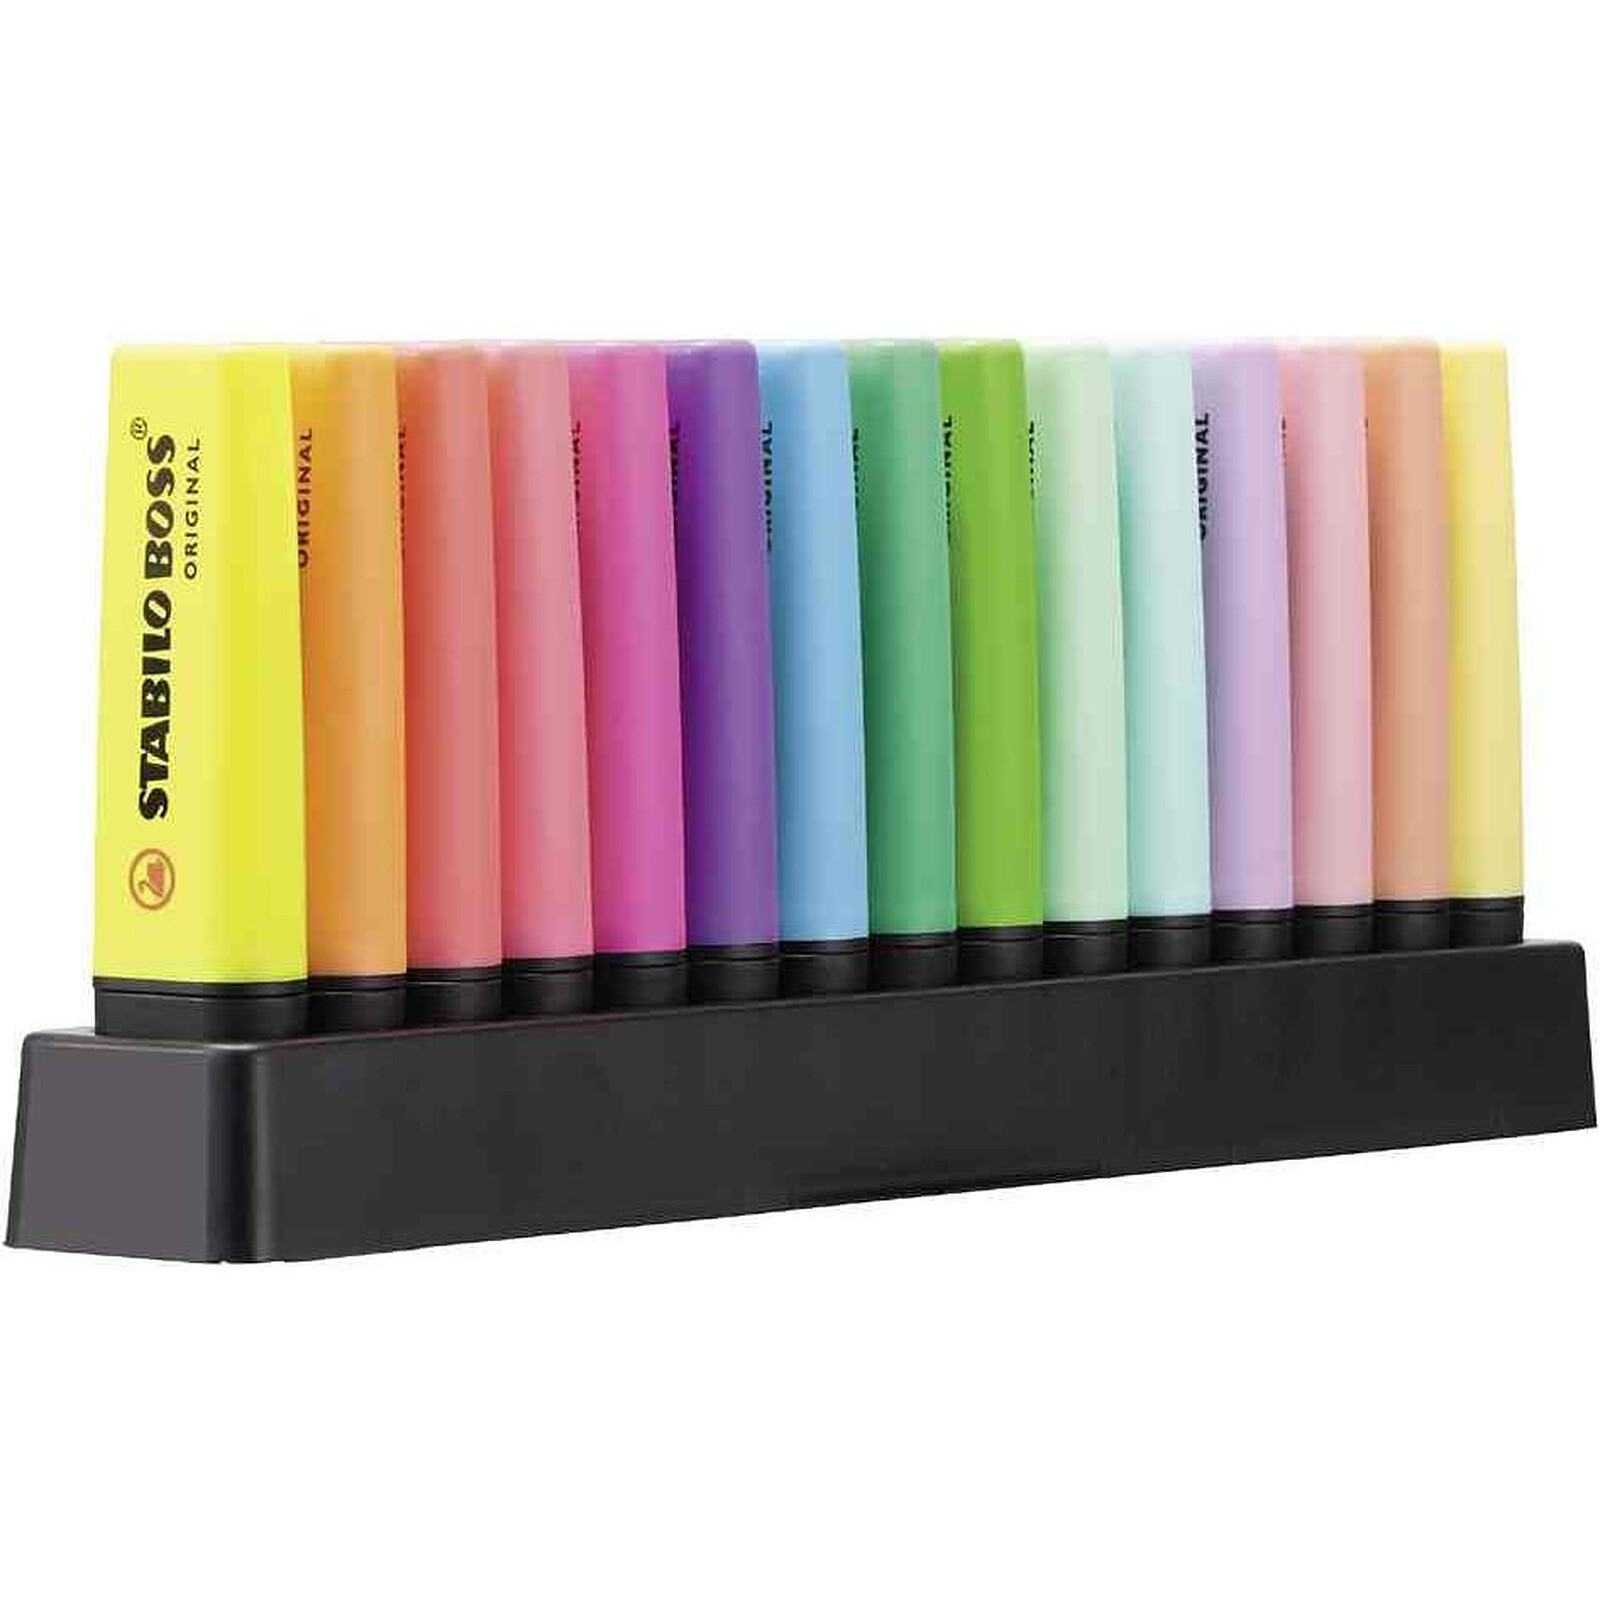 Surligneur pastel STABILO BOSS ORIGINAL Pastel - Pochette de 6 Surligneurs  pastels, Coloris assortis : : Fournitures de bureau